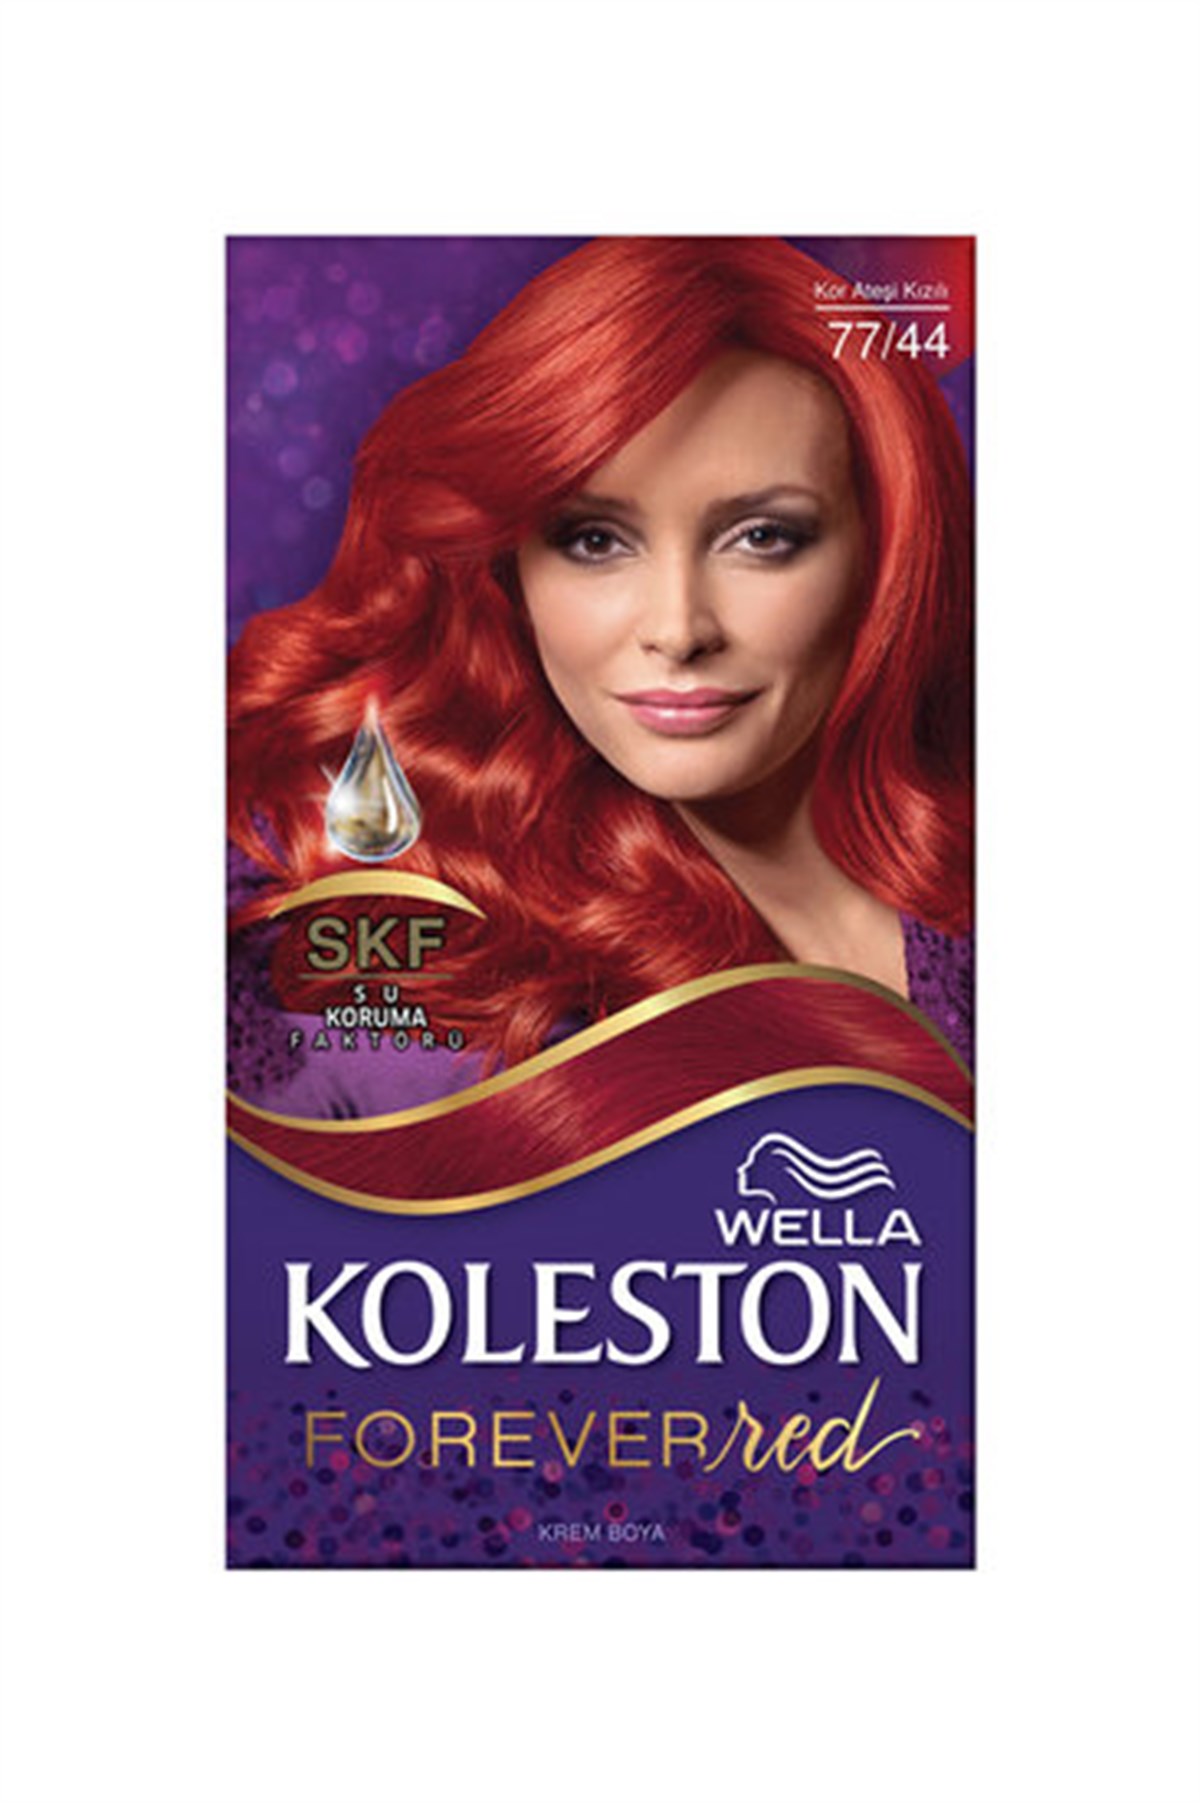 Koleston Set Saç Boyası 77/44 Kor Ateşi Kızılı